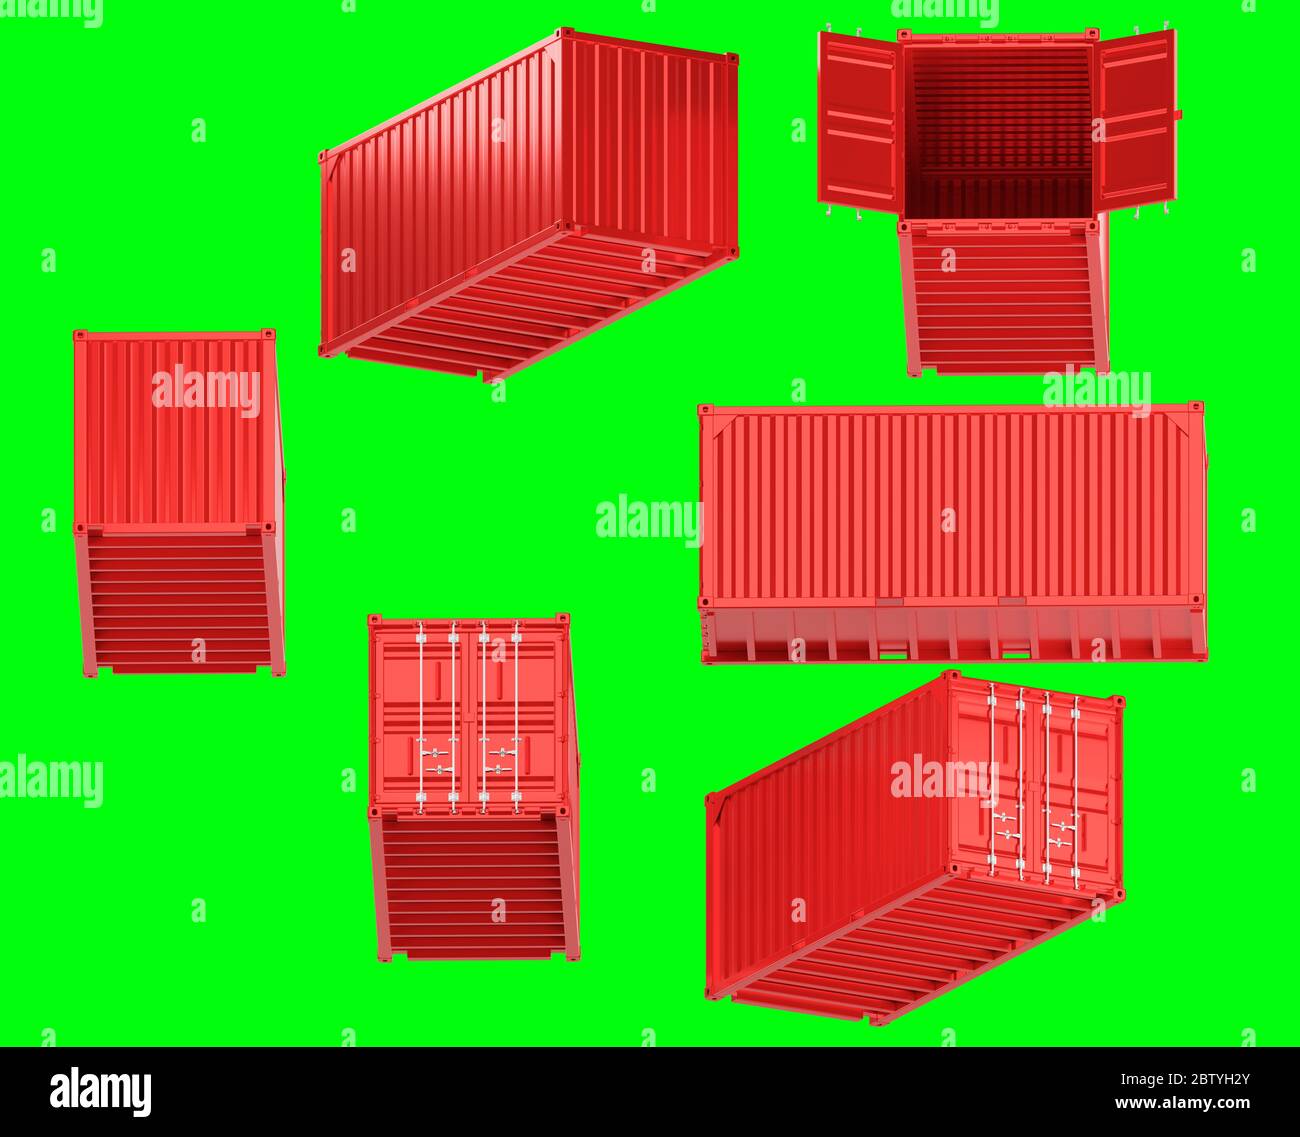 Ein hochwertiges Bild eines roten 20 Fuß großen Versandbehälters auf grünem Hintergrund mit Beschneidungspfad. Zwanzig Fuß Seeschifffahrt Container 3d Render Stockfoto